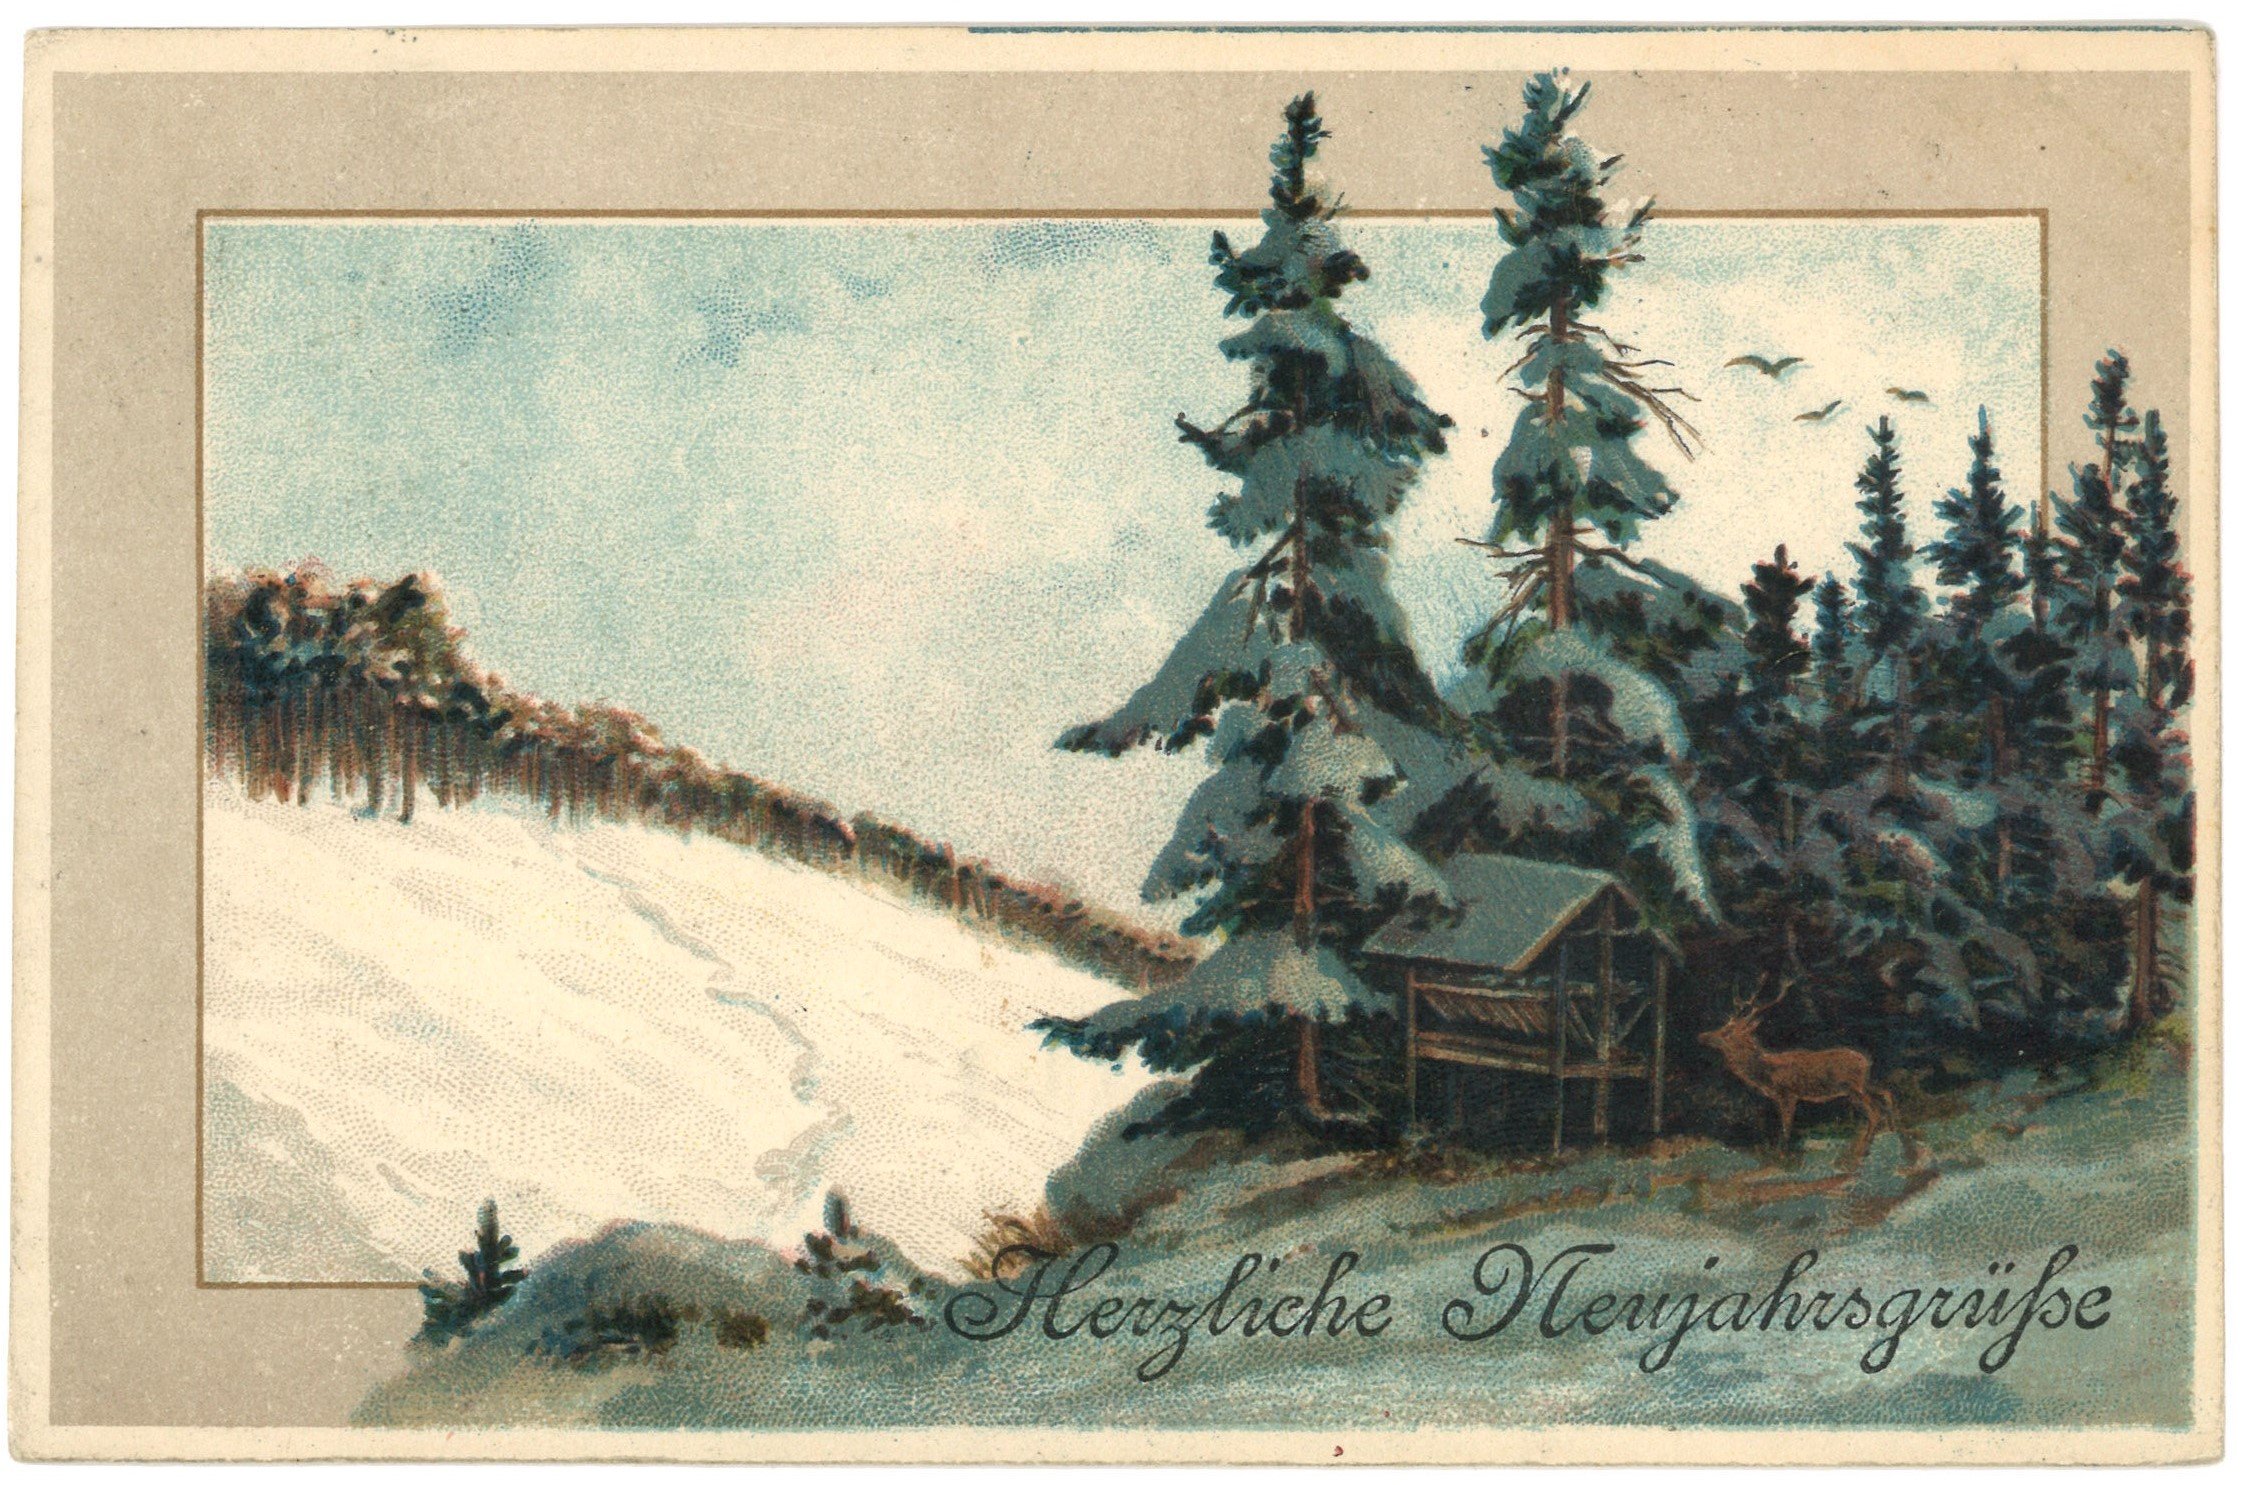 Nekahrsglückwunschkarte mit winterlichem Nadelwaldbild (Landesgeschichtliche Vereinigung für die Mark Brandenburg e.V. CC BY)